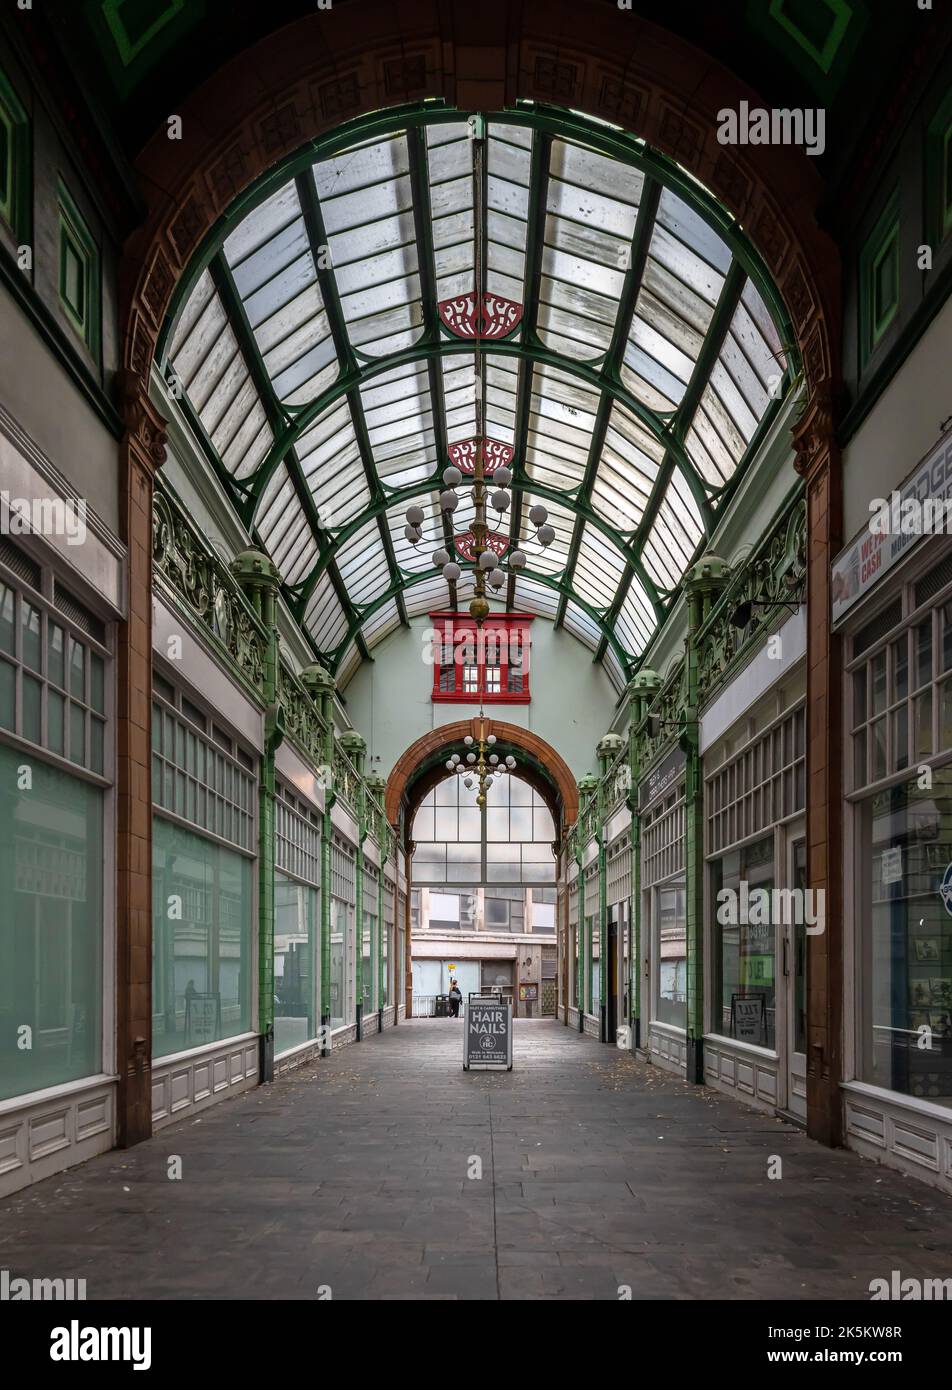 City Arcade ist eine viktorianische Einkaufspassage im Stadtzentrum von Birmingham. Es verfügt über ein gewölbtes Glasdach und grüne Terrakotta-Pilaster. Stockfoto